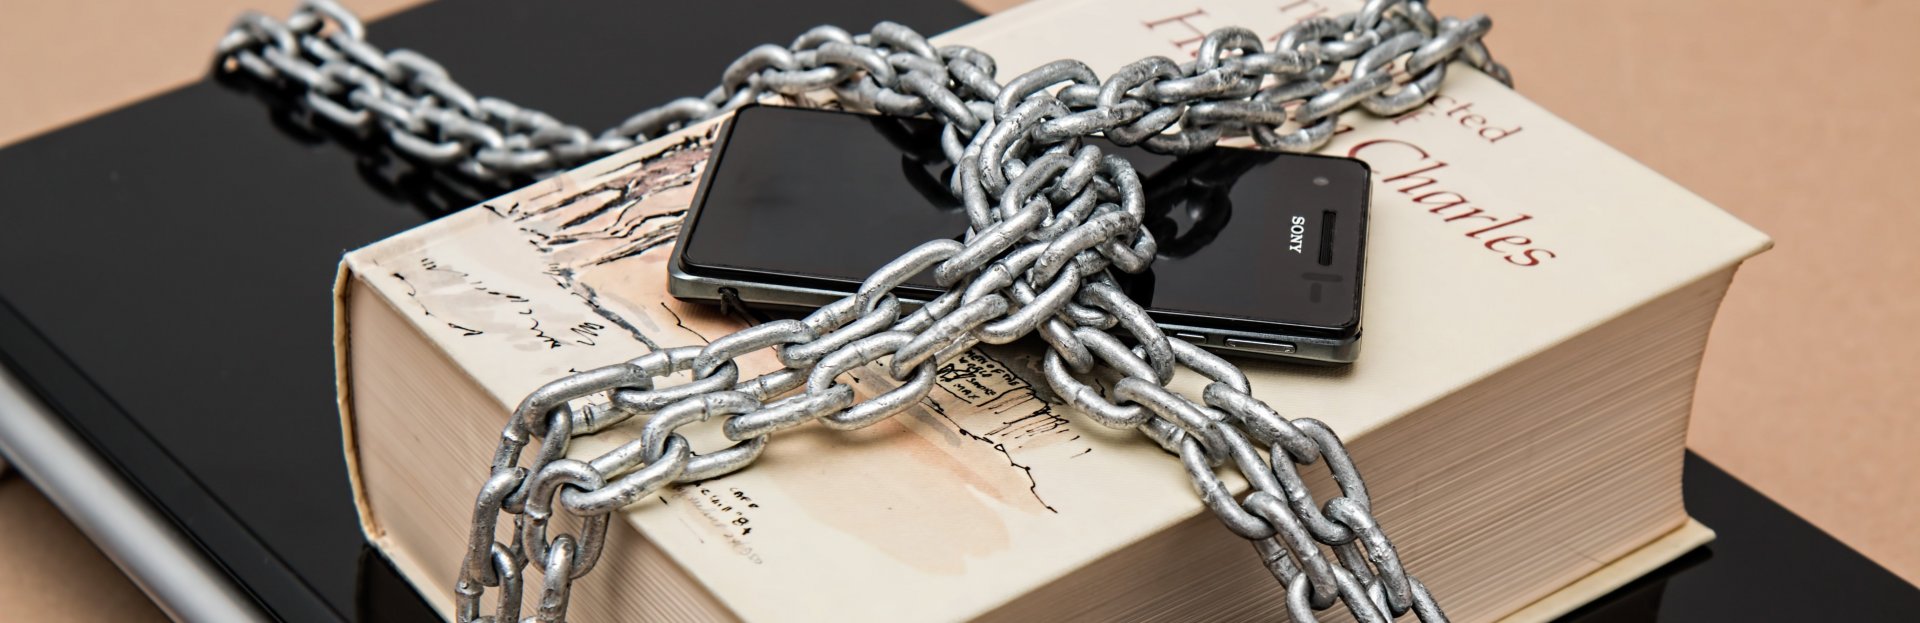 Tablet, libro y celular encadenados